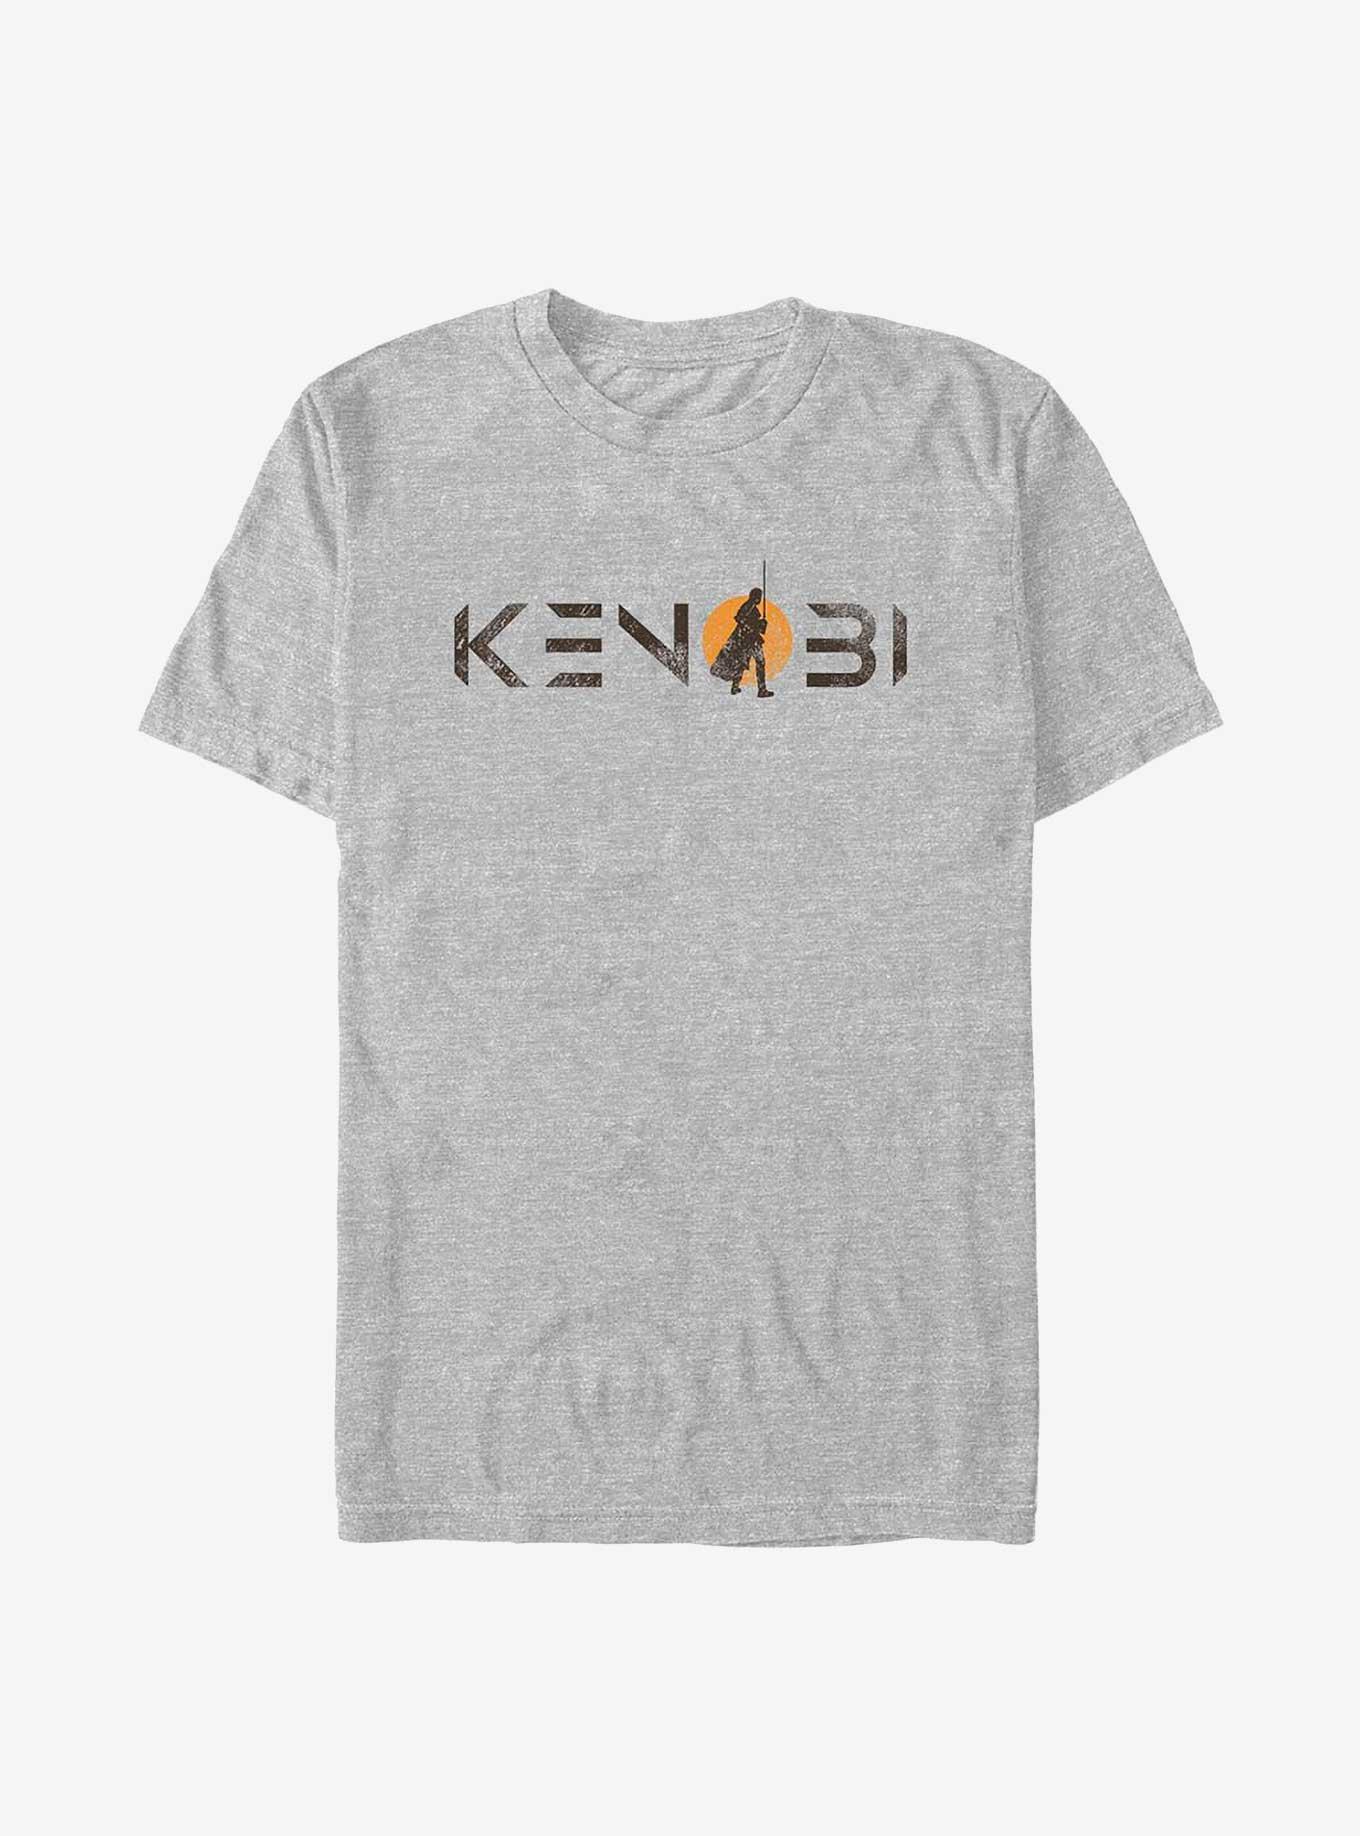 Star Wars Obi-Wan Kenobi Single Sun Logo T-Shirt